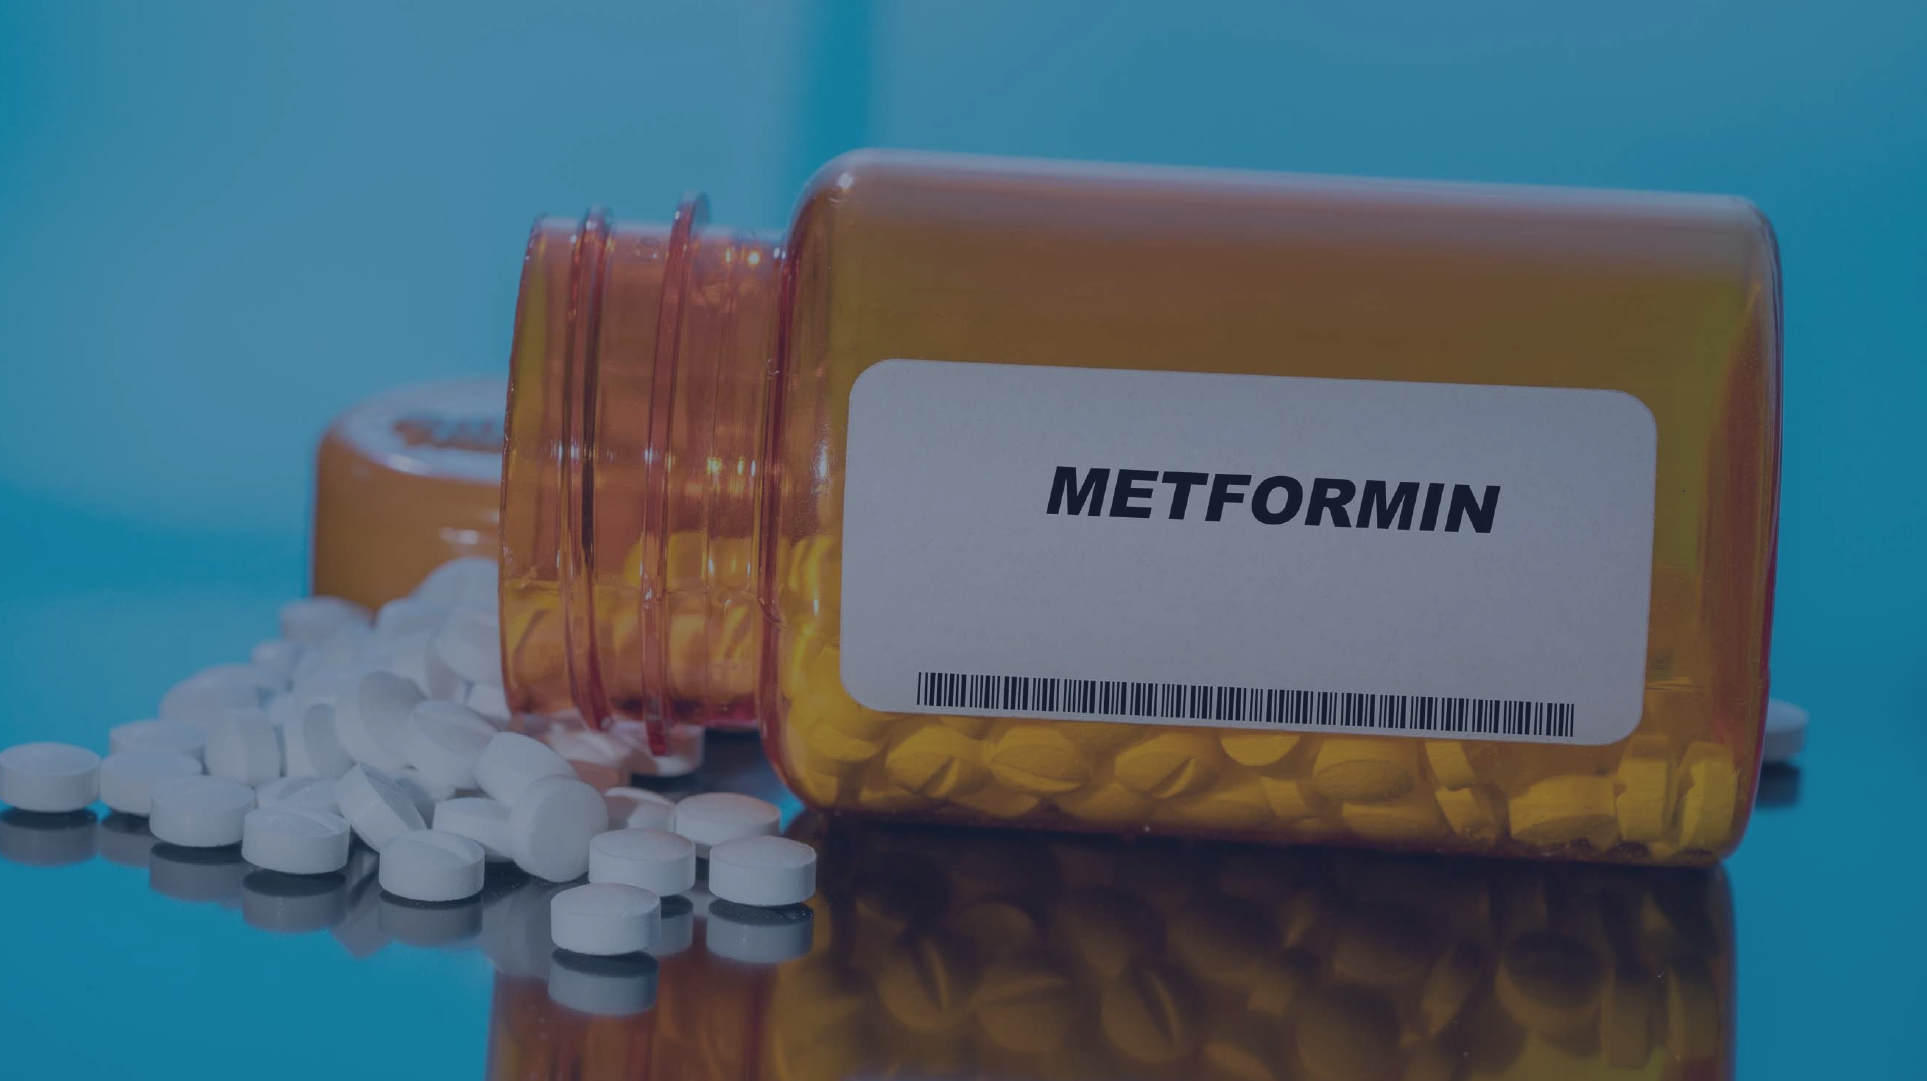 Метформин - лекарственное средство от всех заболеваний?